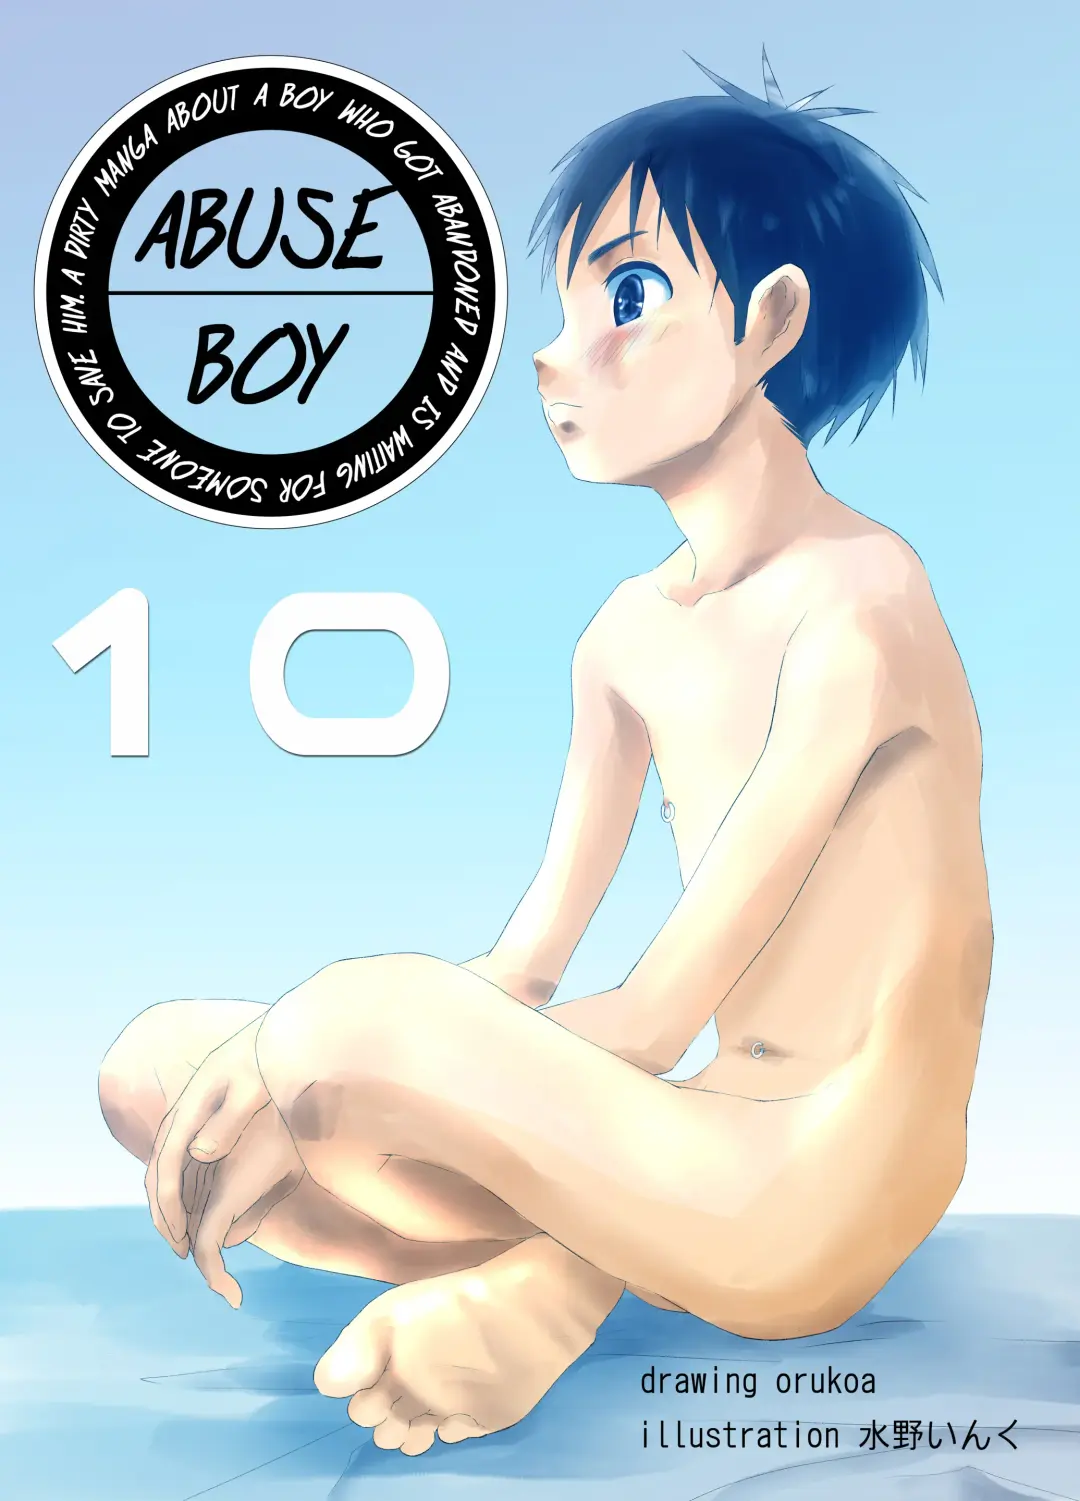 Read [Orukoa] Ibasho ga Nai node Kamimachi shite mita Suterareta Shounen no Ero Manga Ch. 10 | A Dirty Manga About a Boy Who Got Abandoned and Is Waiting for Someone To Save Him Ch. 10 - Fhentai.net